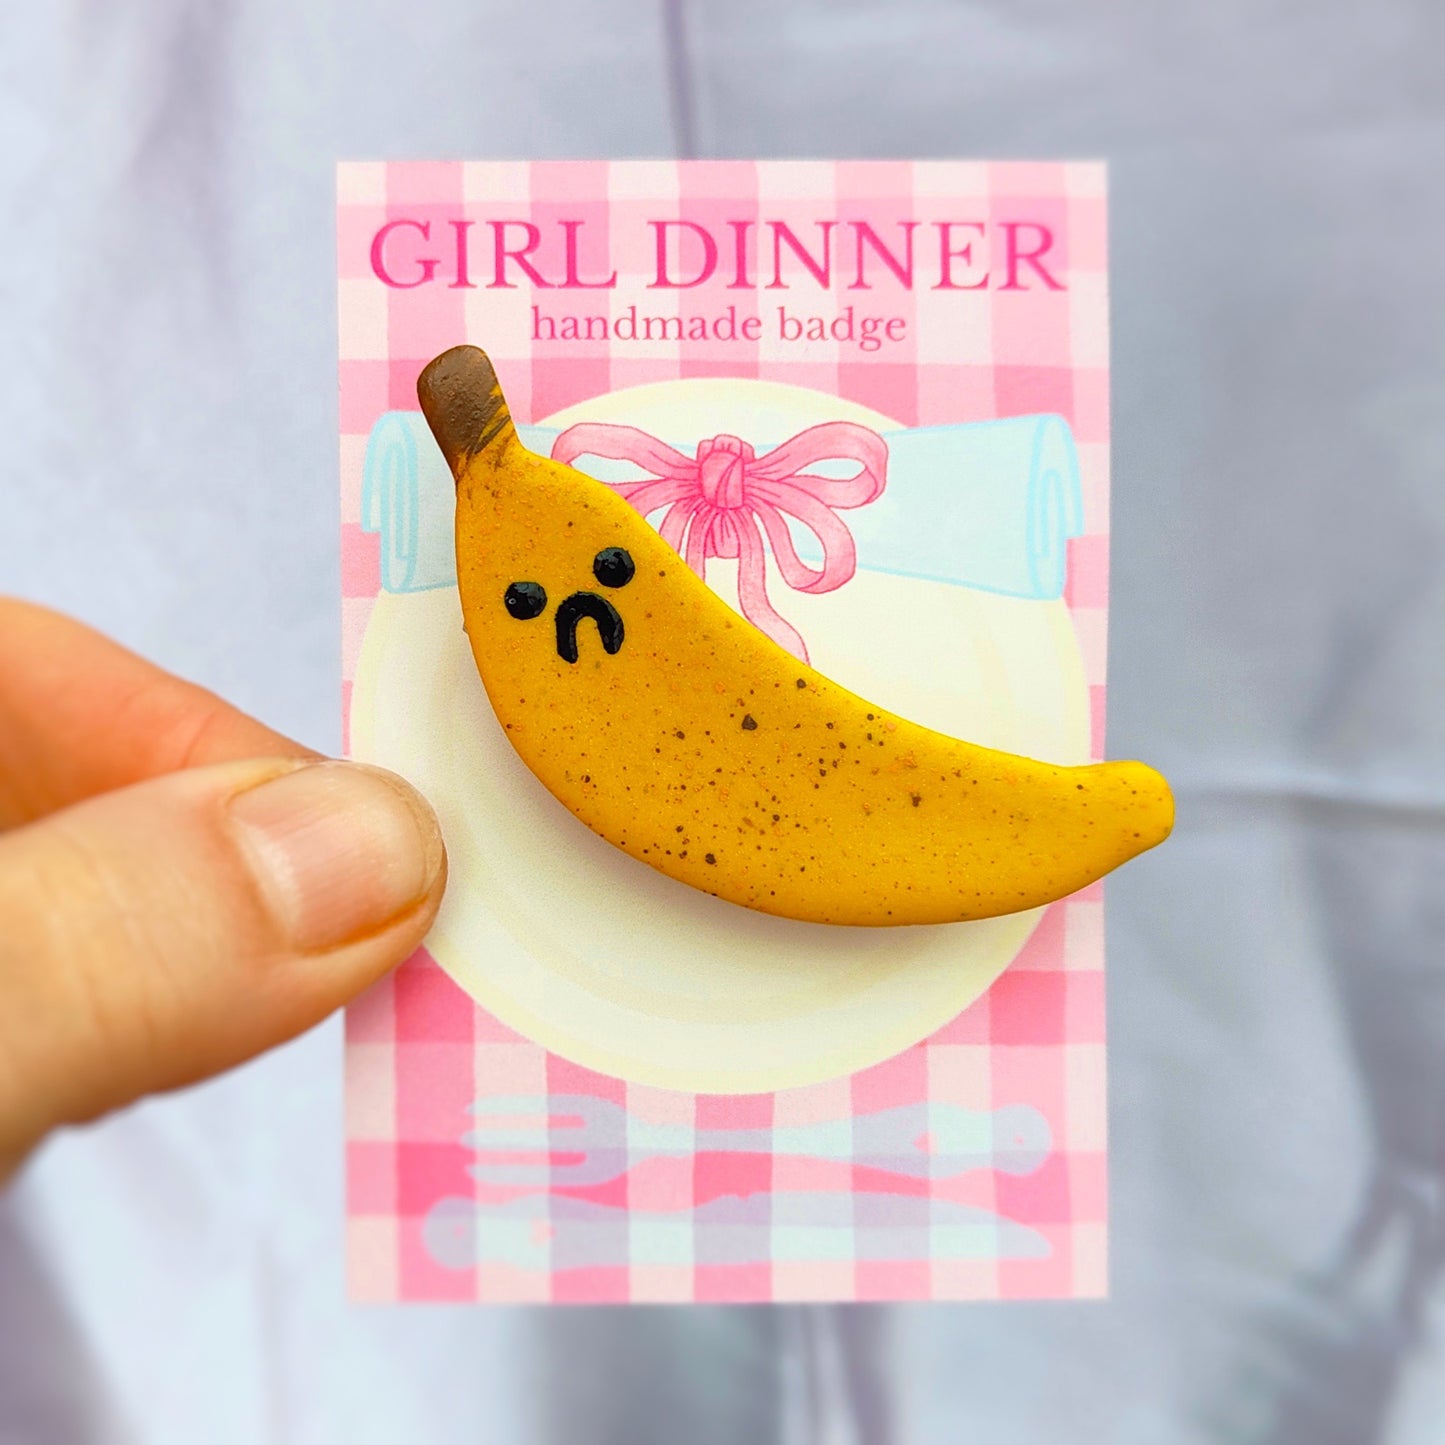 Banana Handmade Pin Badge - Worried Banana - Girl Dinner